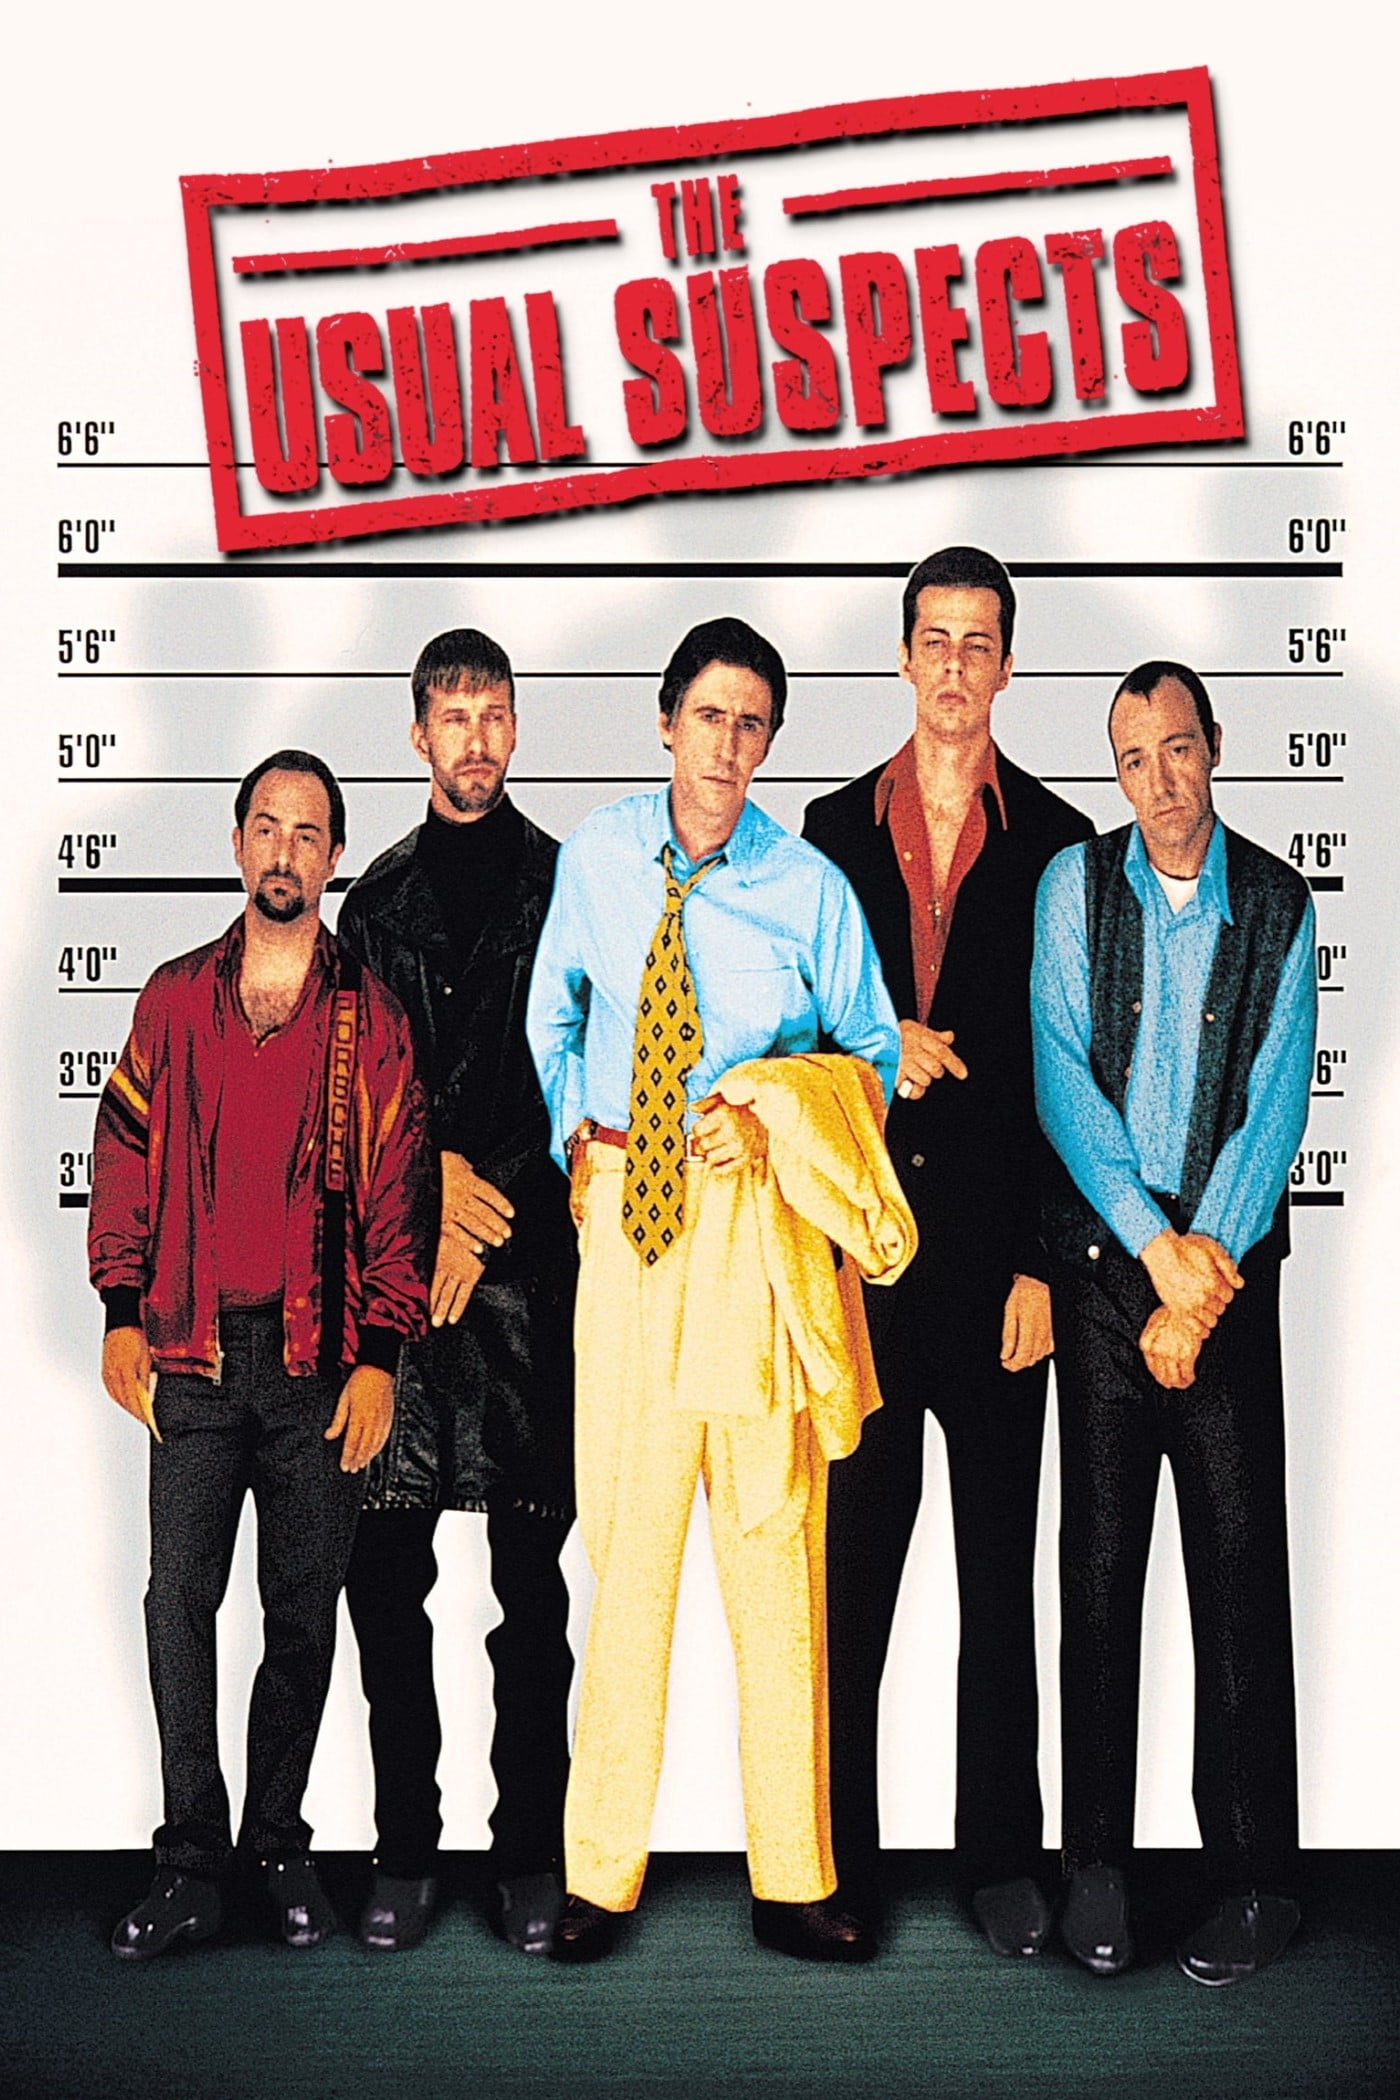 دانلود صوت دوبله فیلم The Usual Suspects 1995